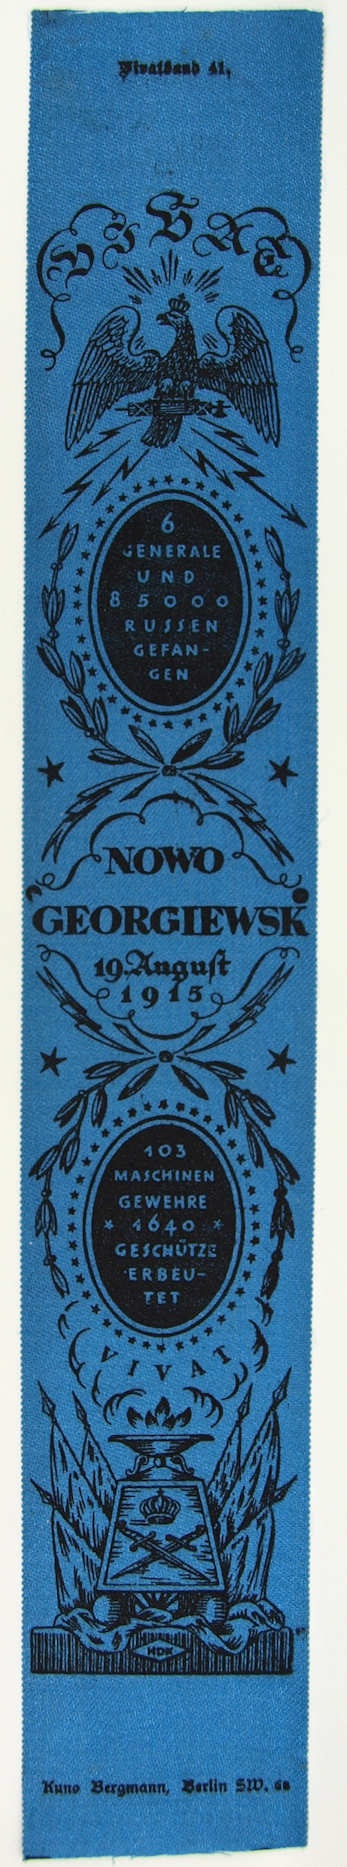 Vivatband anlässlich der Schlacht bei Nowo Georgiewsk, 1. Weltkrieg 1915 (Museum Weißenfels - Schloss Neu-Augustusburg CC BY-NC-SA)